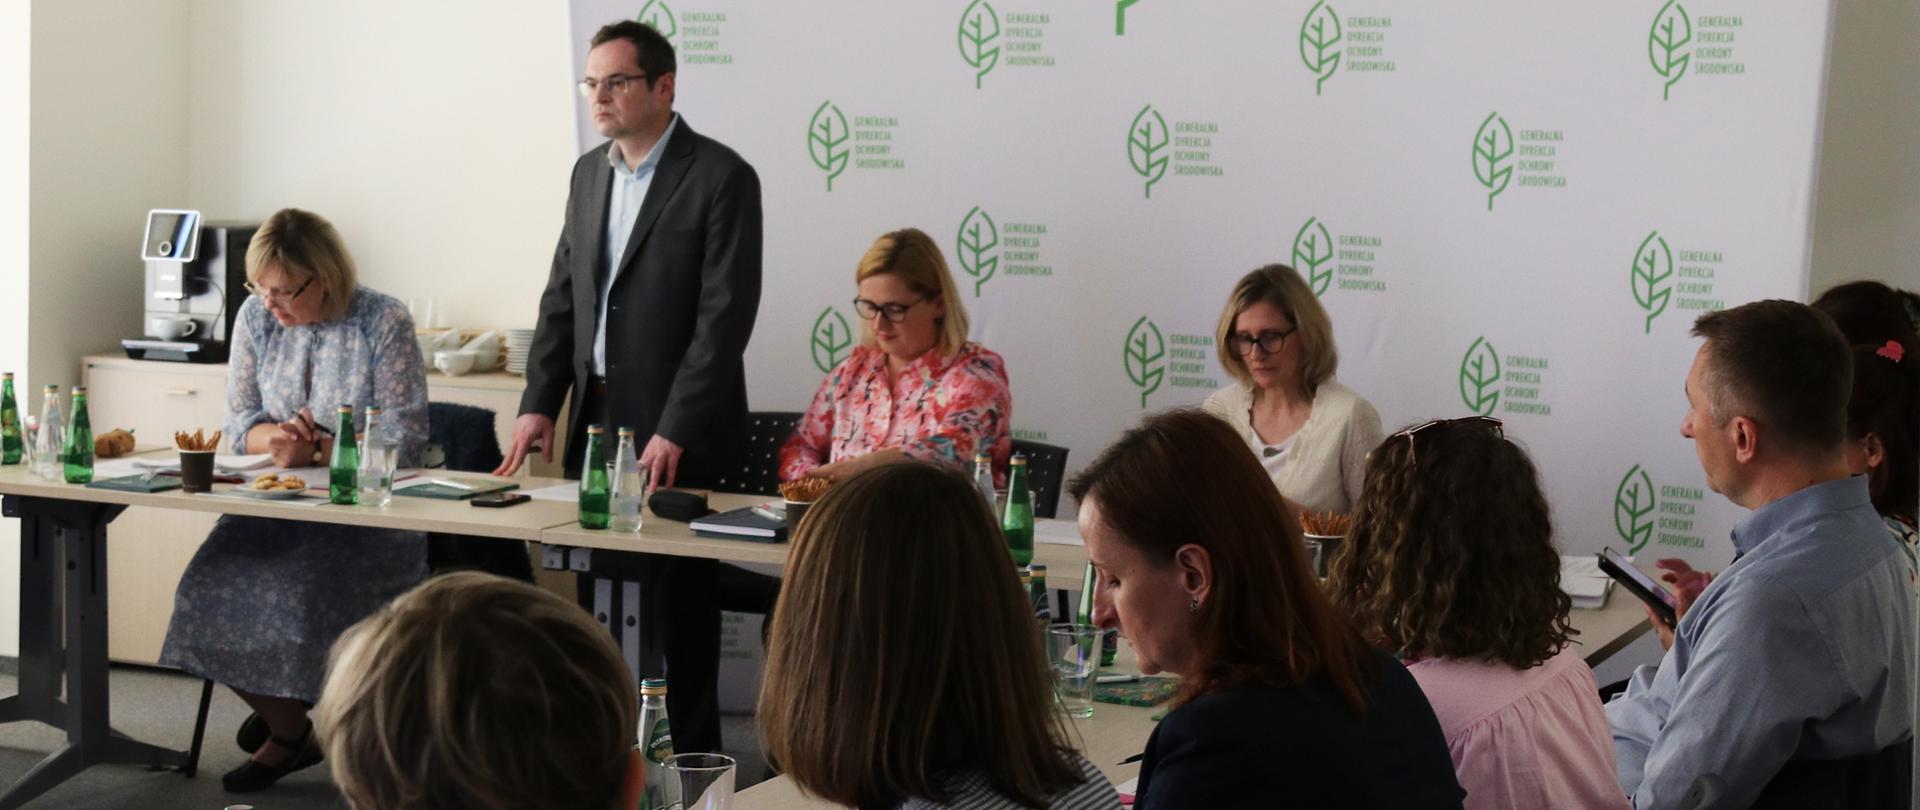 widok na uczestników spotkania, część z nich siedzi za stołem konferencyjnym, mężczyzna stoi i wita gości. Za nim widać białą ściankę reklamową z powielonym zielonym logotypem Generalnej Dyrekcji Ochrony Środowiska (liść)